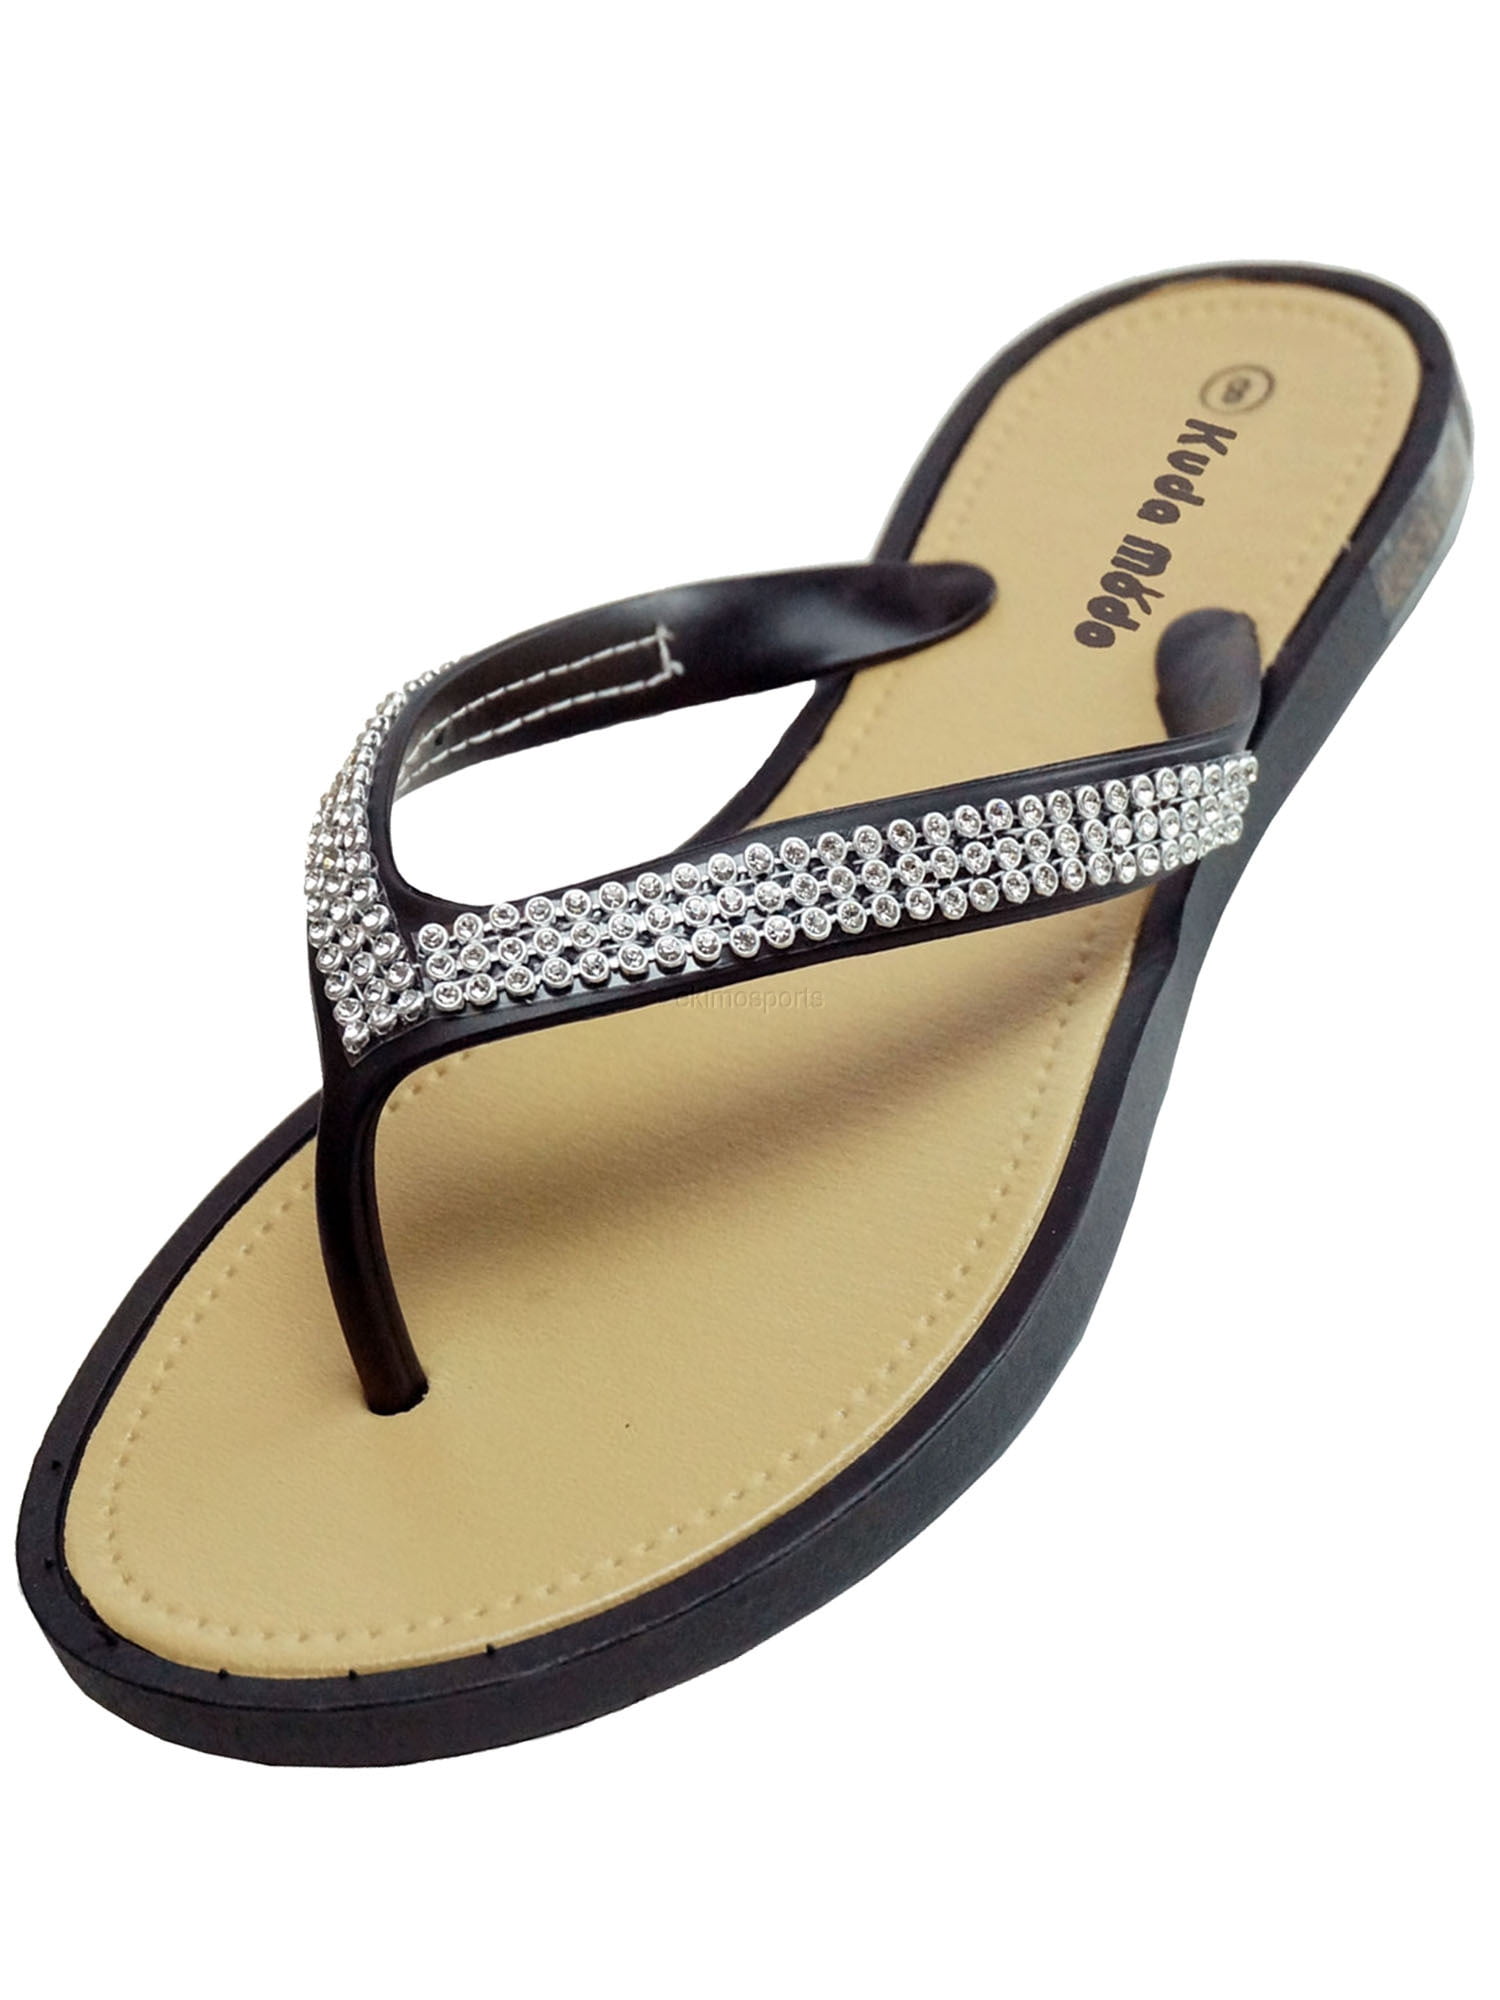 Women's Metal Decor Summer Comfort Casual Thong Flat Flip Flops Sandals Slipper